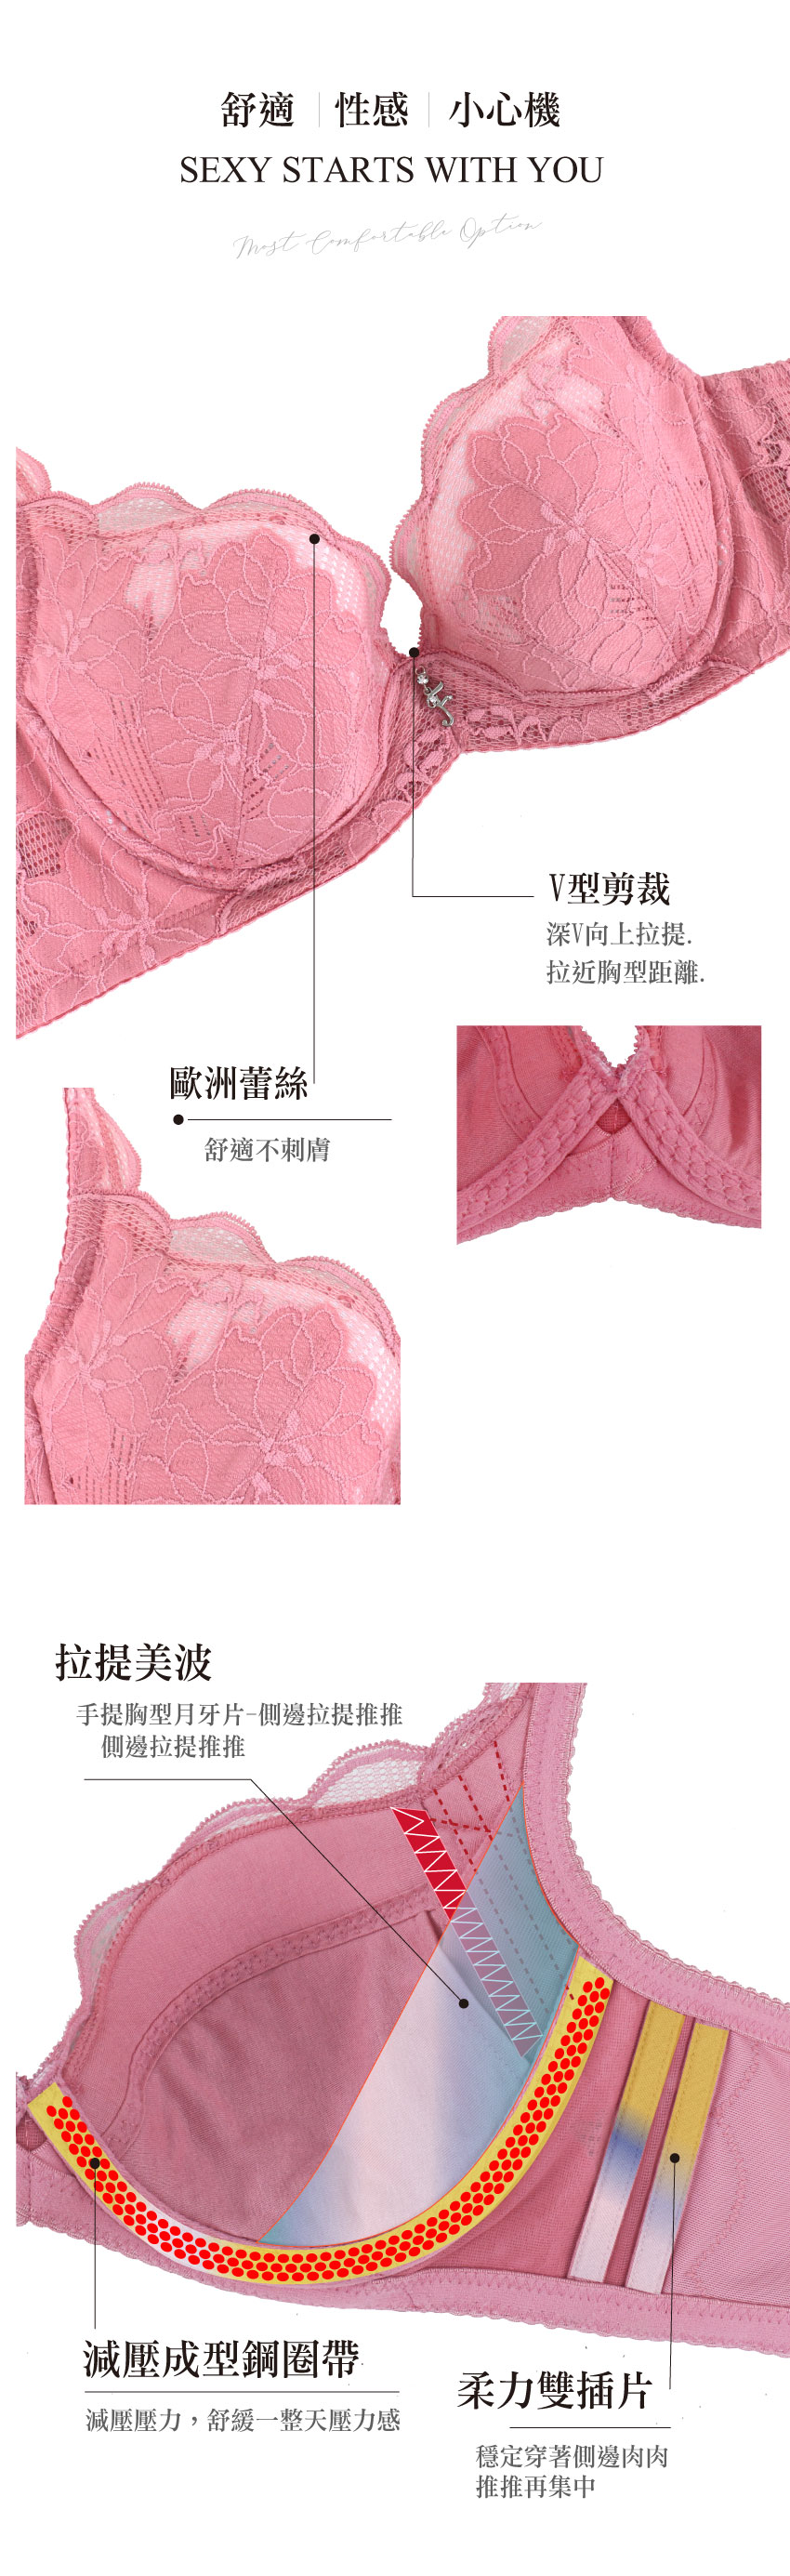 美藝系列 奈米涼感 環保健康素材 機能內衣BCDE罩杯(湖水綠)